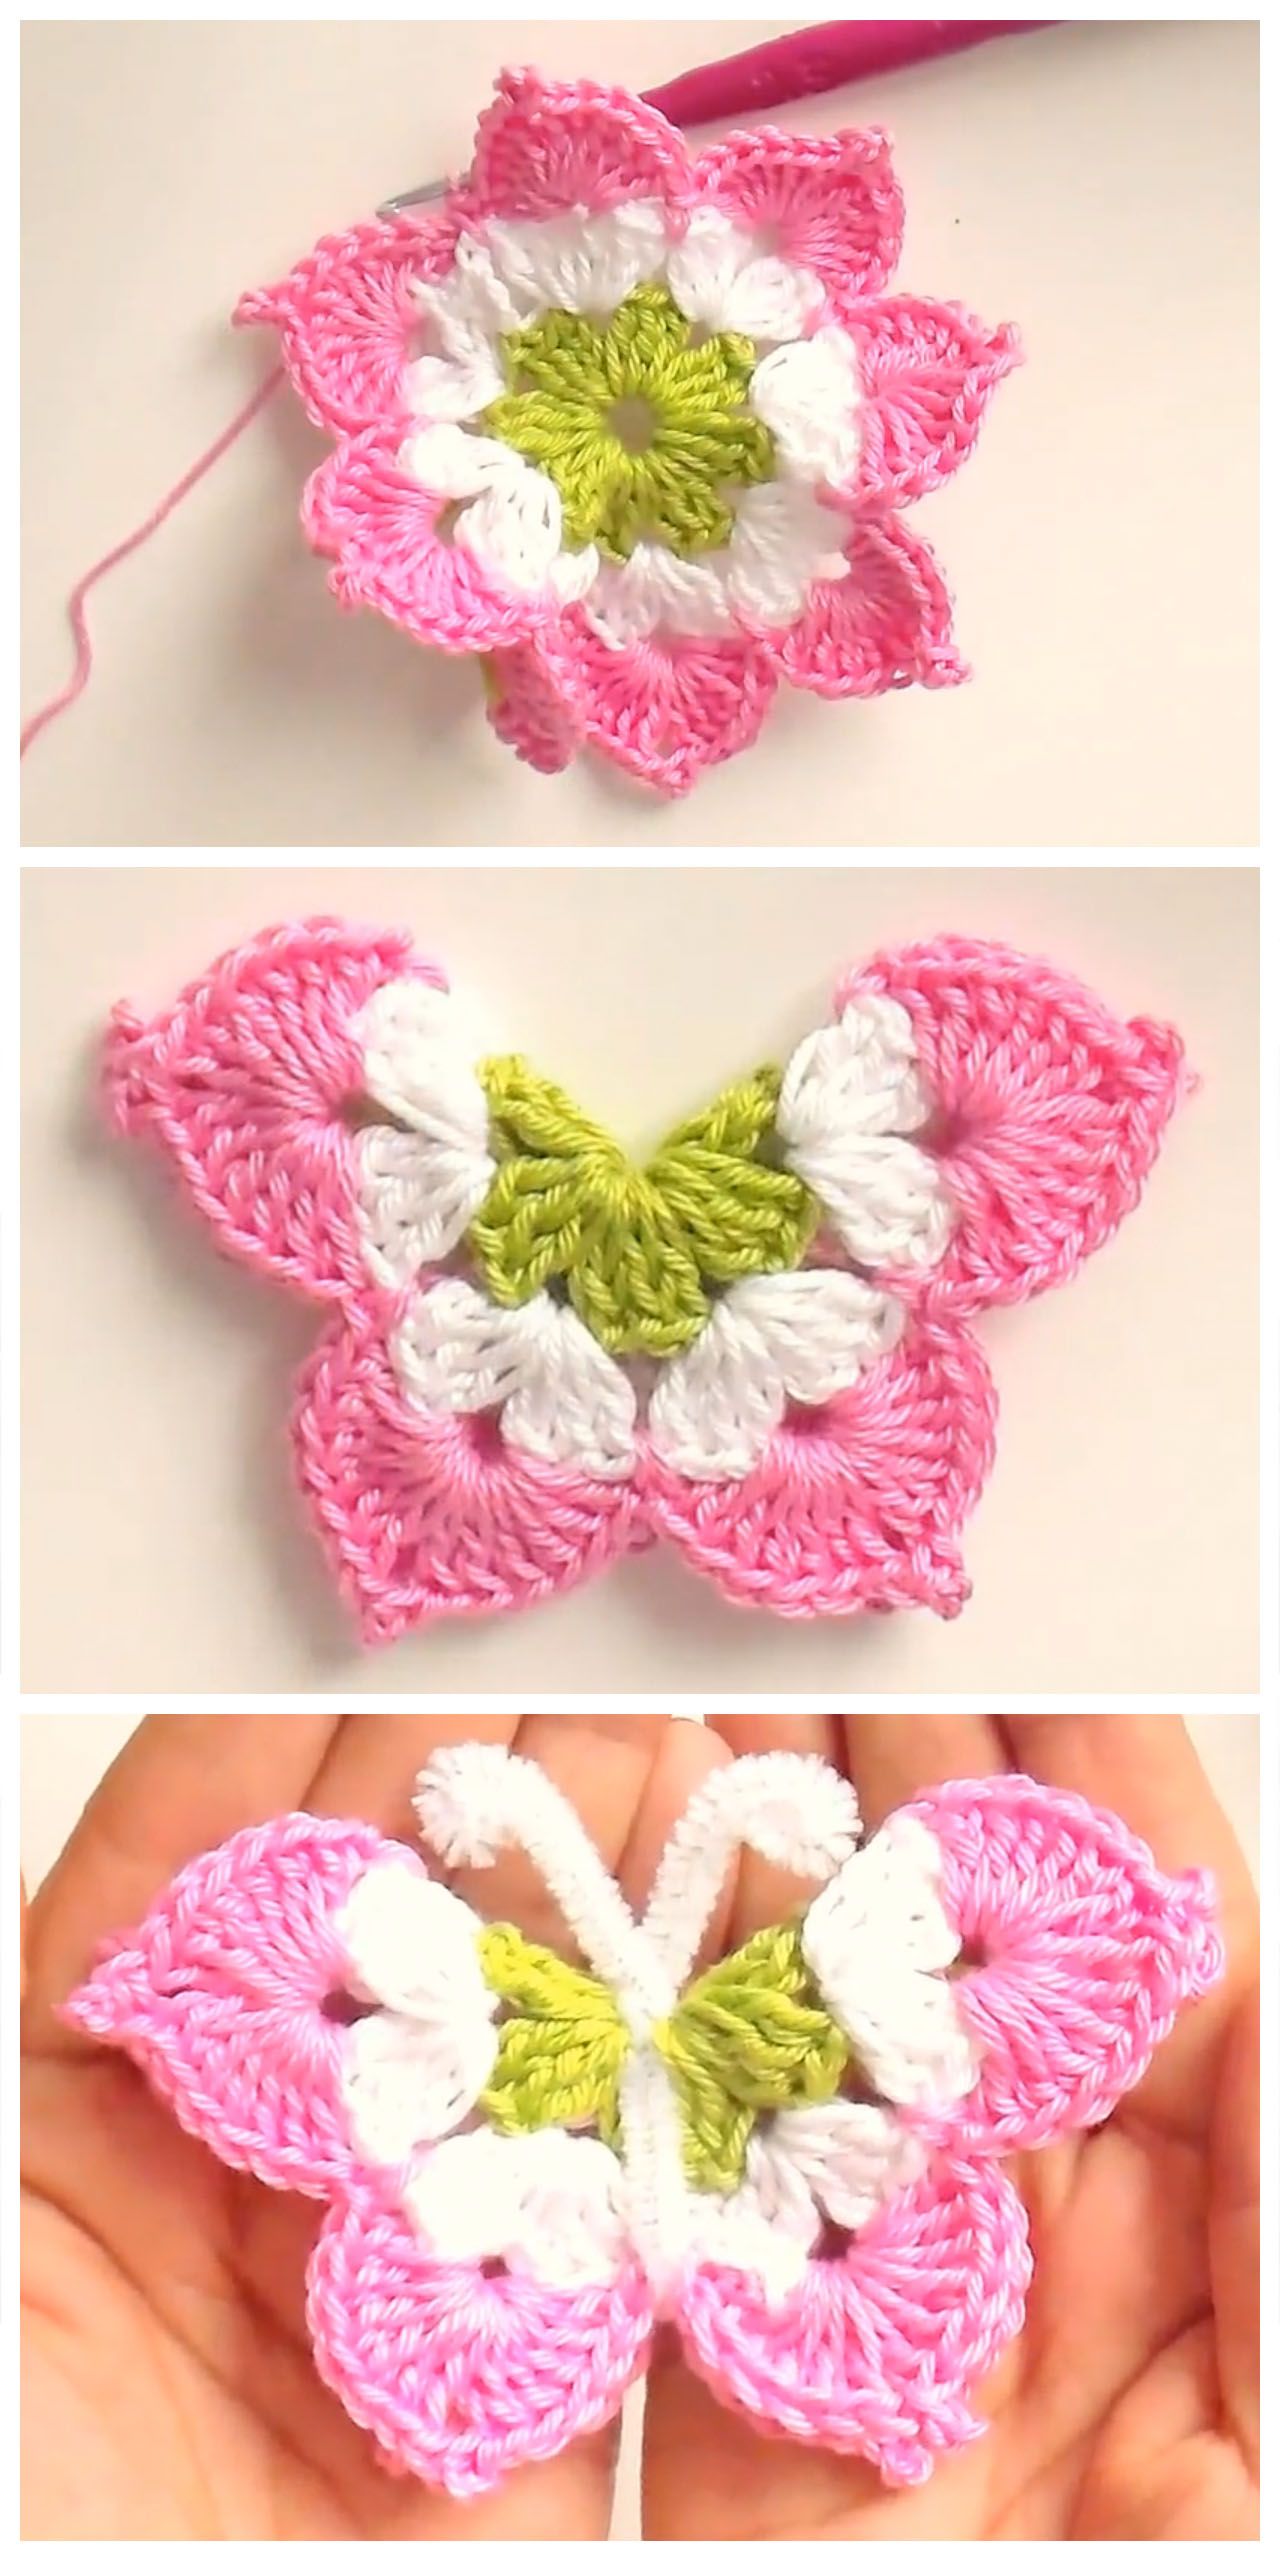 Learn Making Pretty 3D Crochet Butterfly